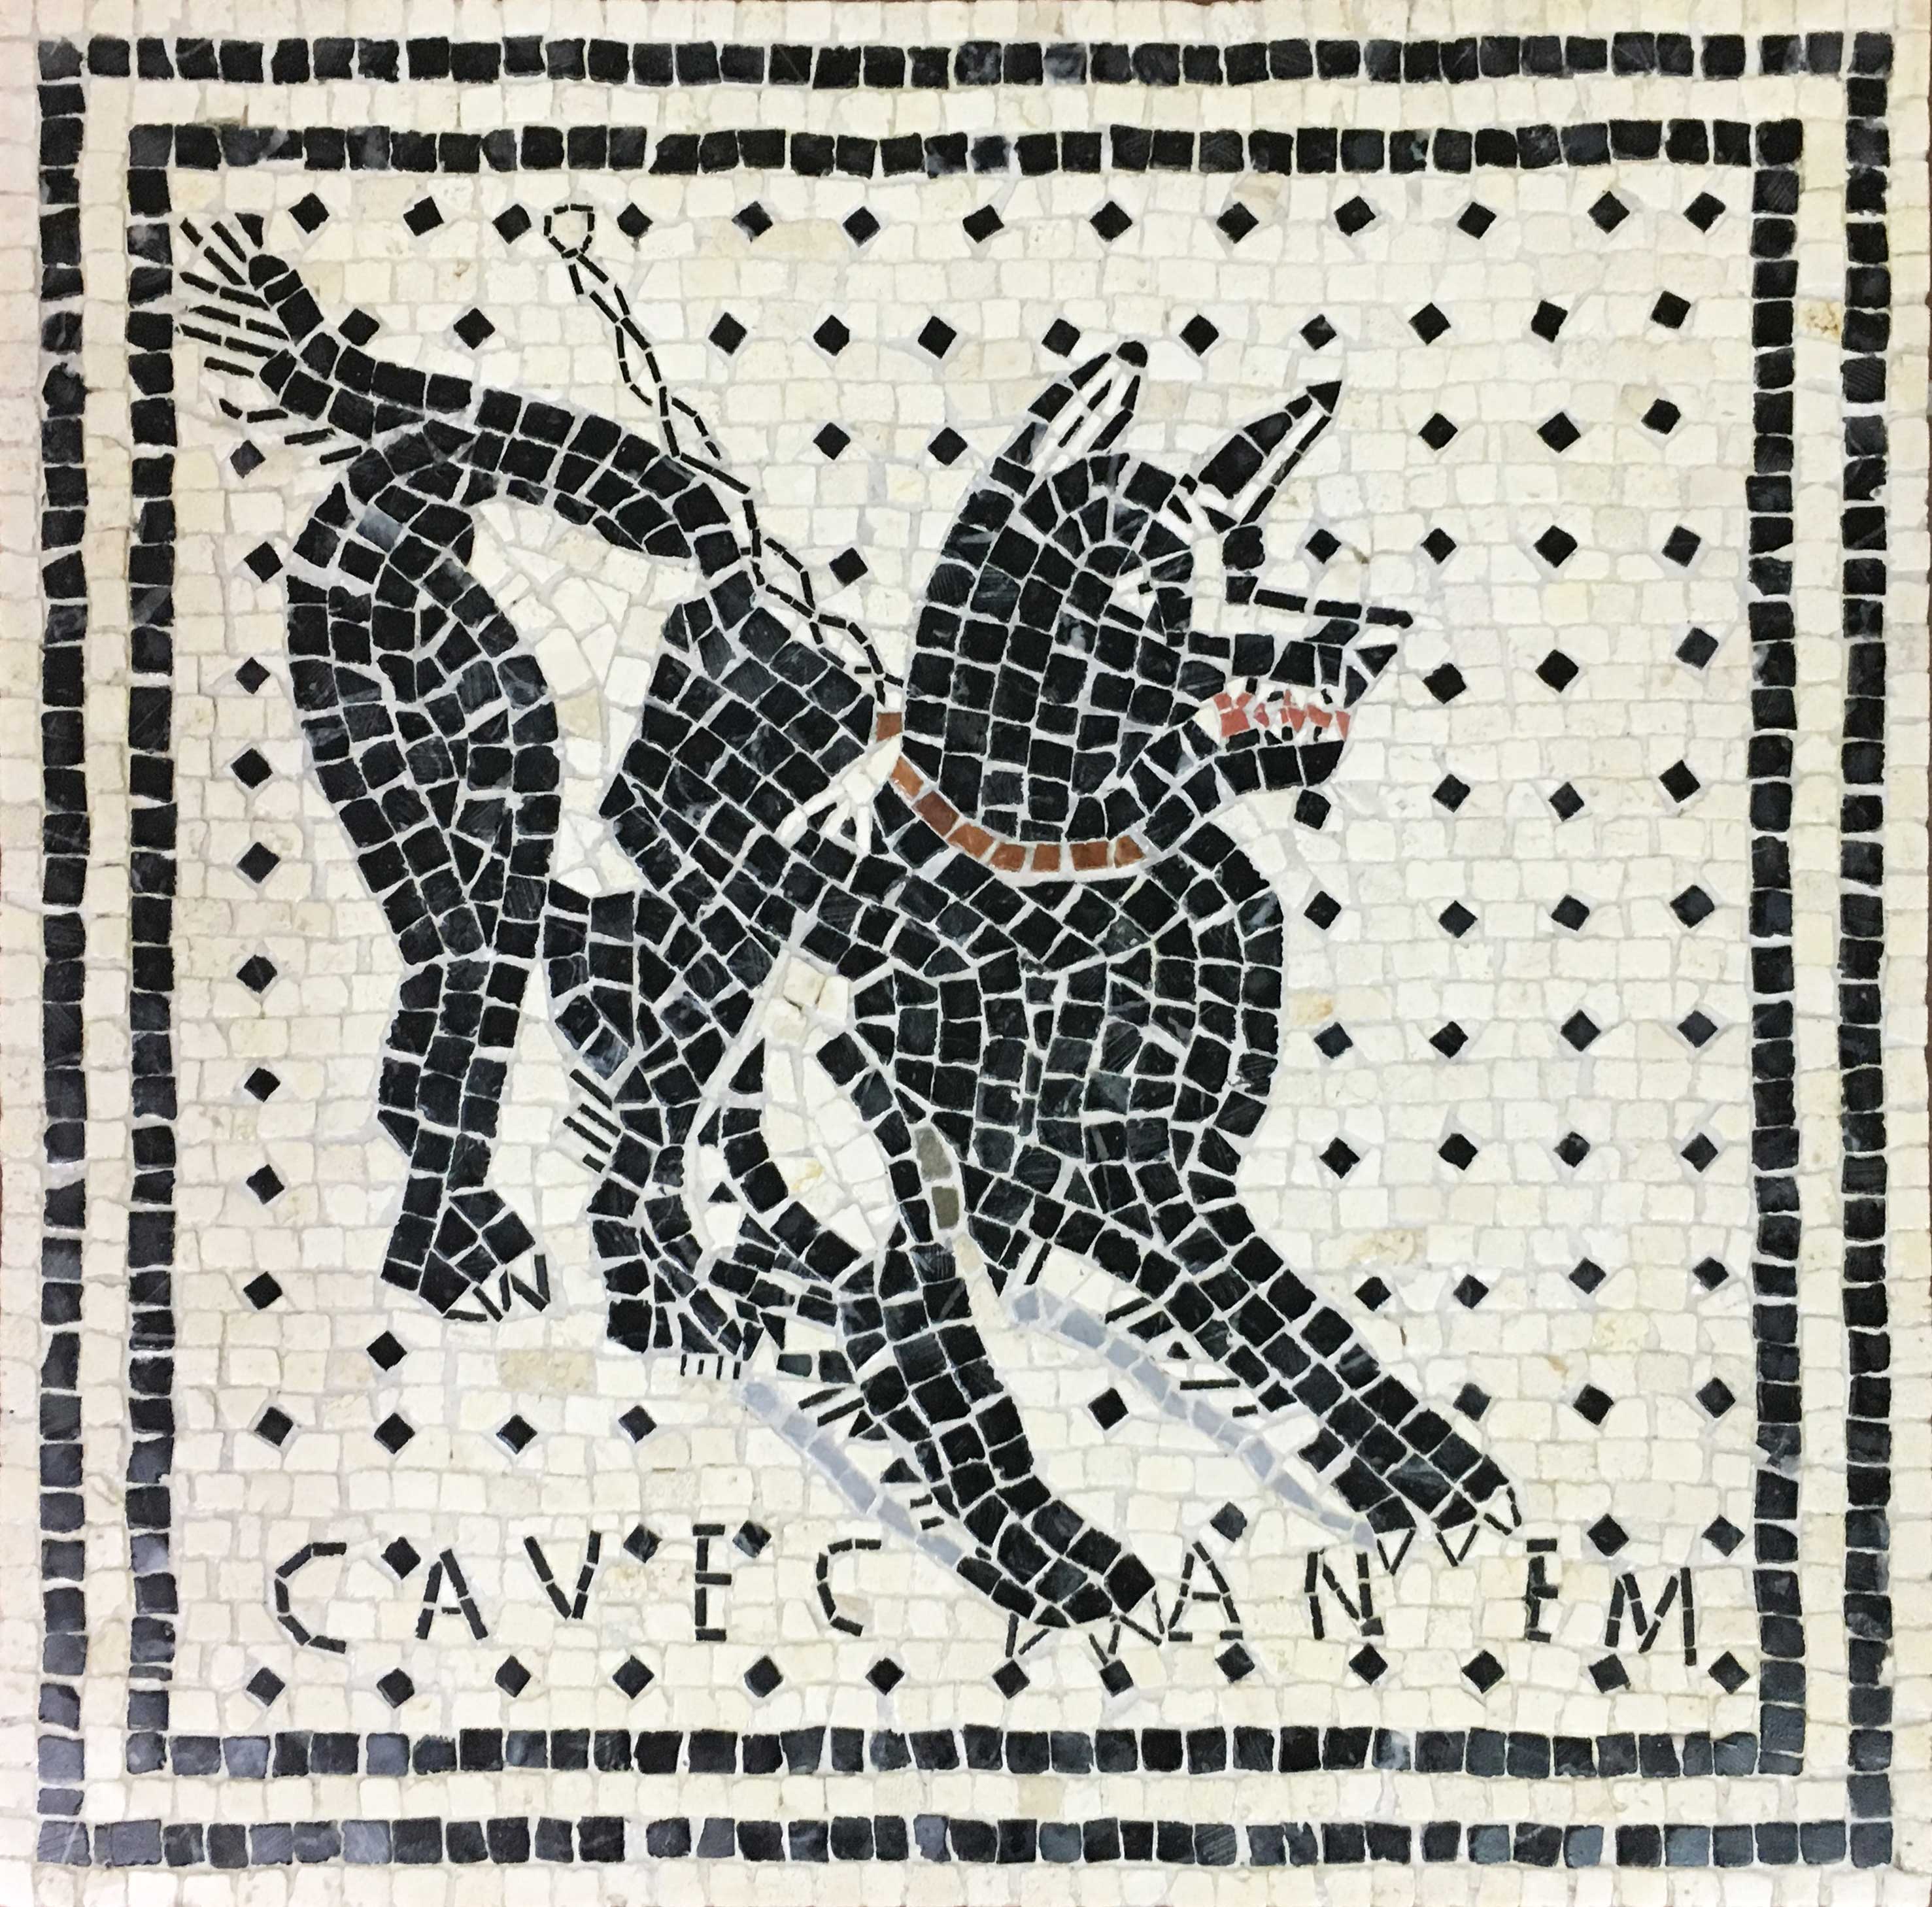 Слово мозаика с латинского означает. Cave Canem Римская мозаика. Опус Тесселатум мозаика. Opus tessellatum Римская мозаика. Opus regulatum Римская мозаика.